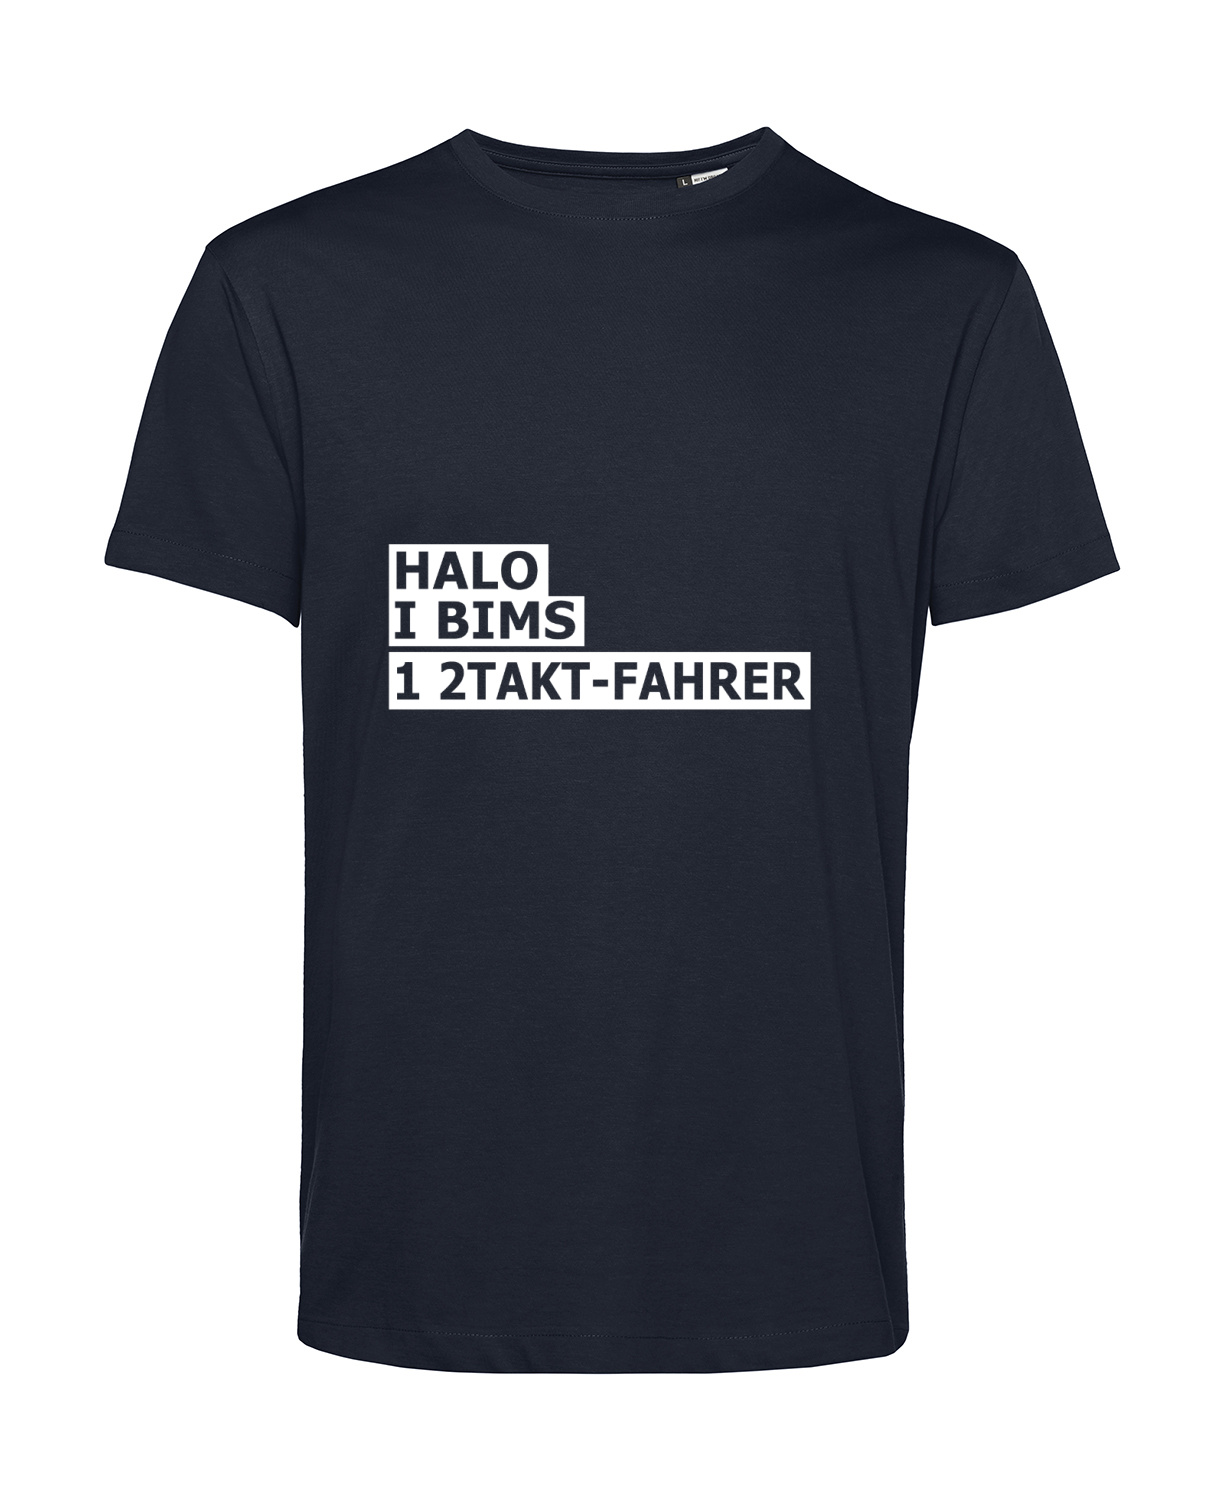 Nachhaltiges T-Shirt Herren 2Takter - Halo I bims 1 2Takt-Fahrer